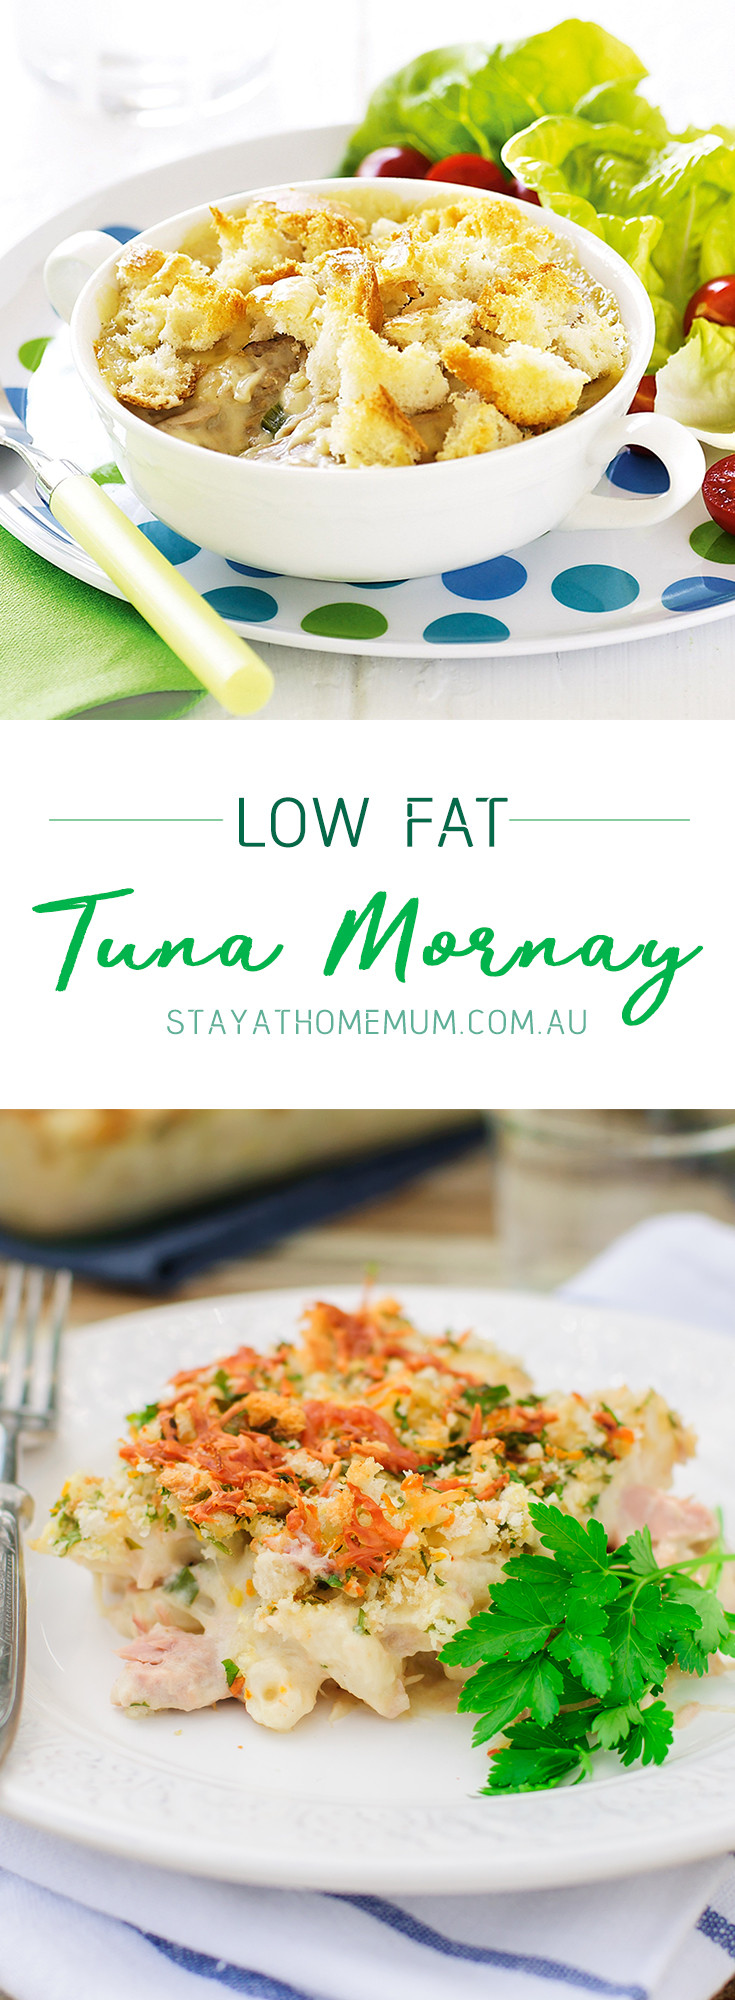 Low Fat Tuna Recipes
 Low Fat Tuna Mornay